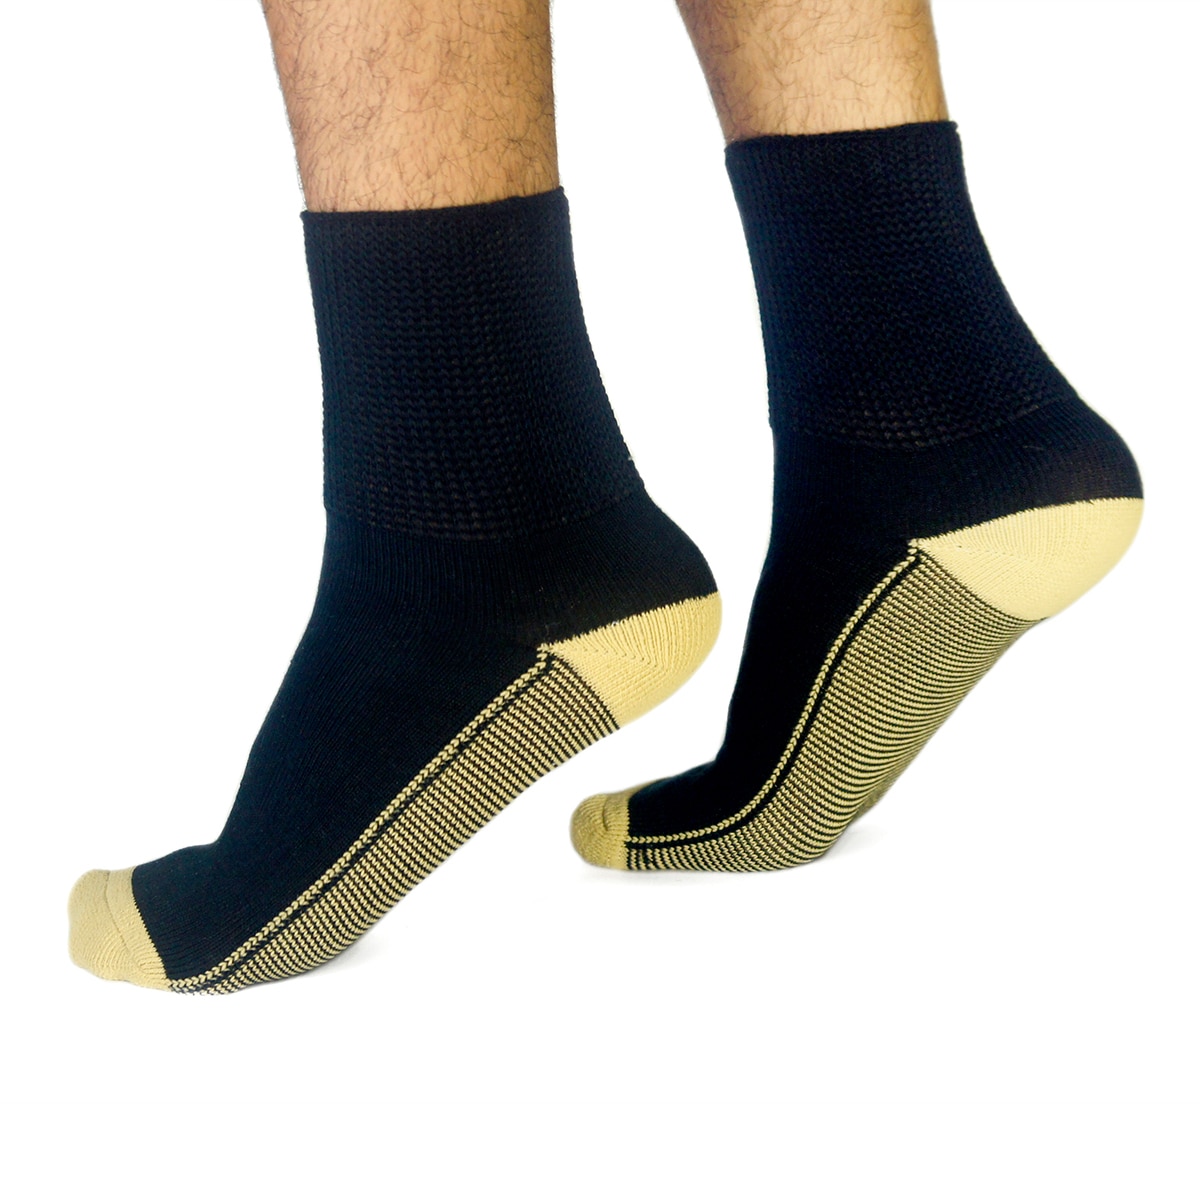 Copper Socks, Calcetines Cortos para Diabéticos (3 Pares) Color Negro Talla Mediana